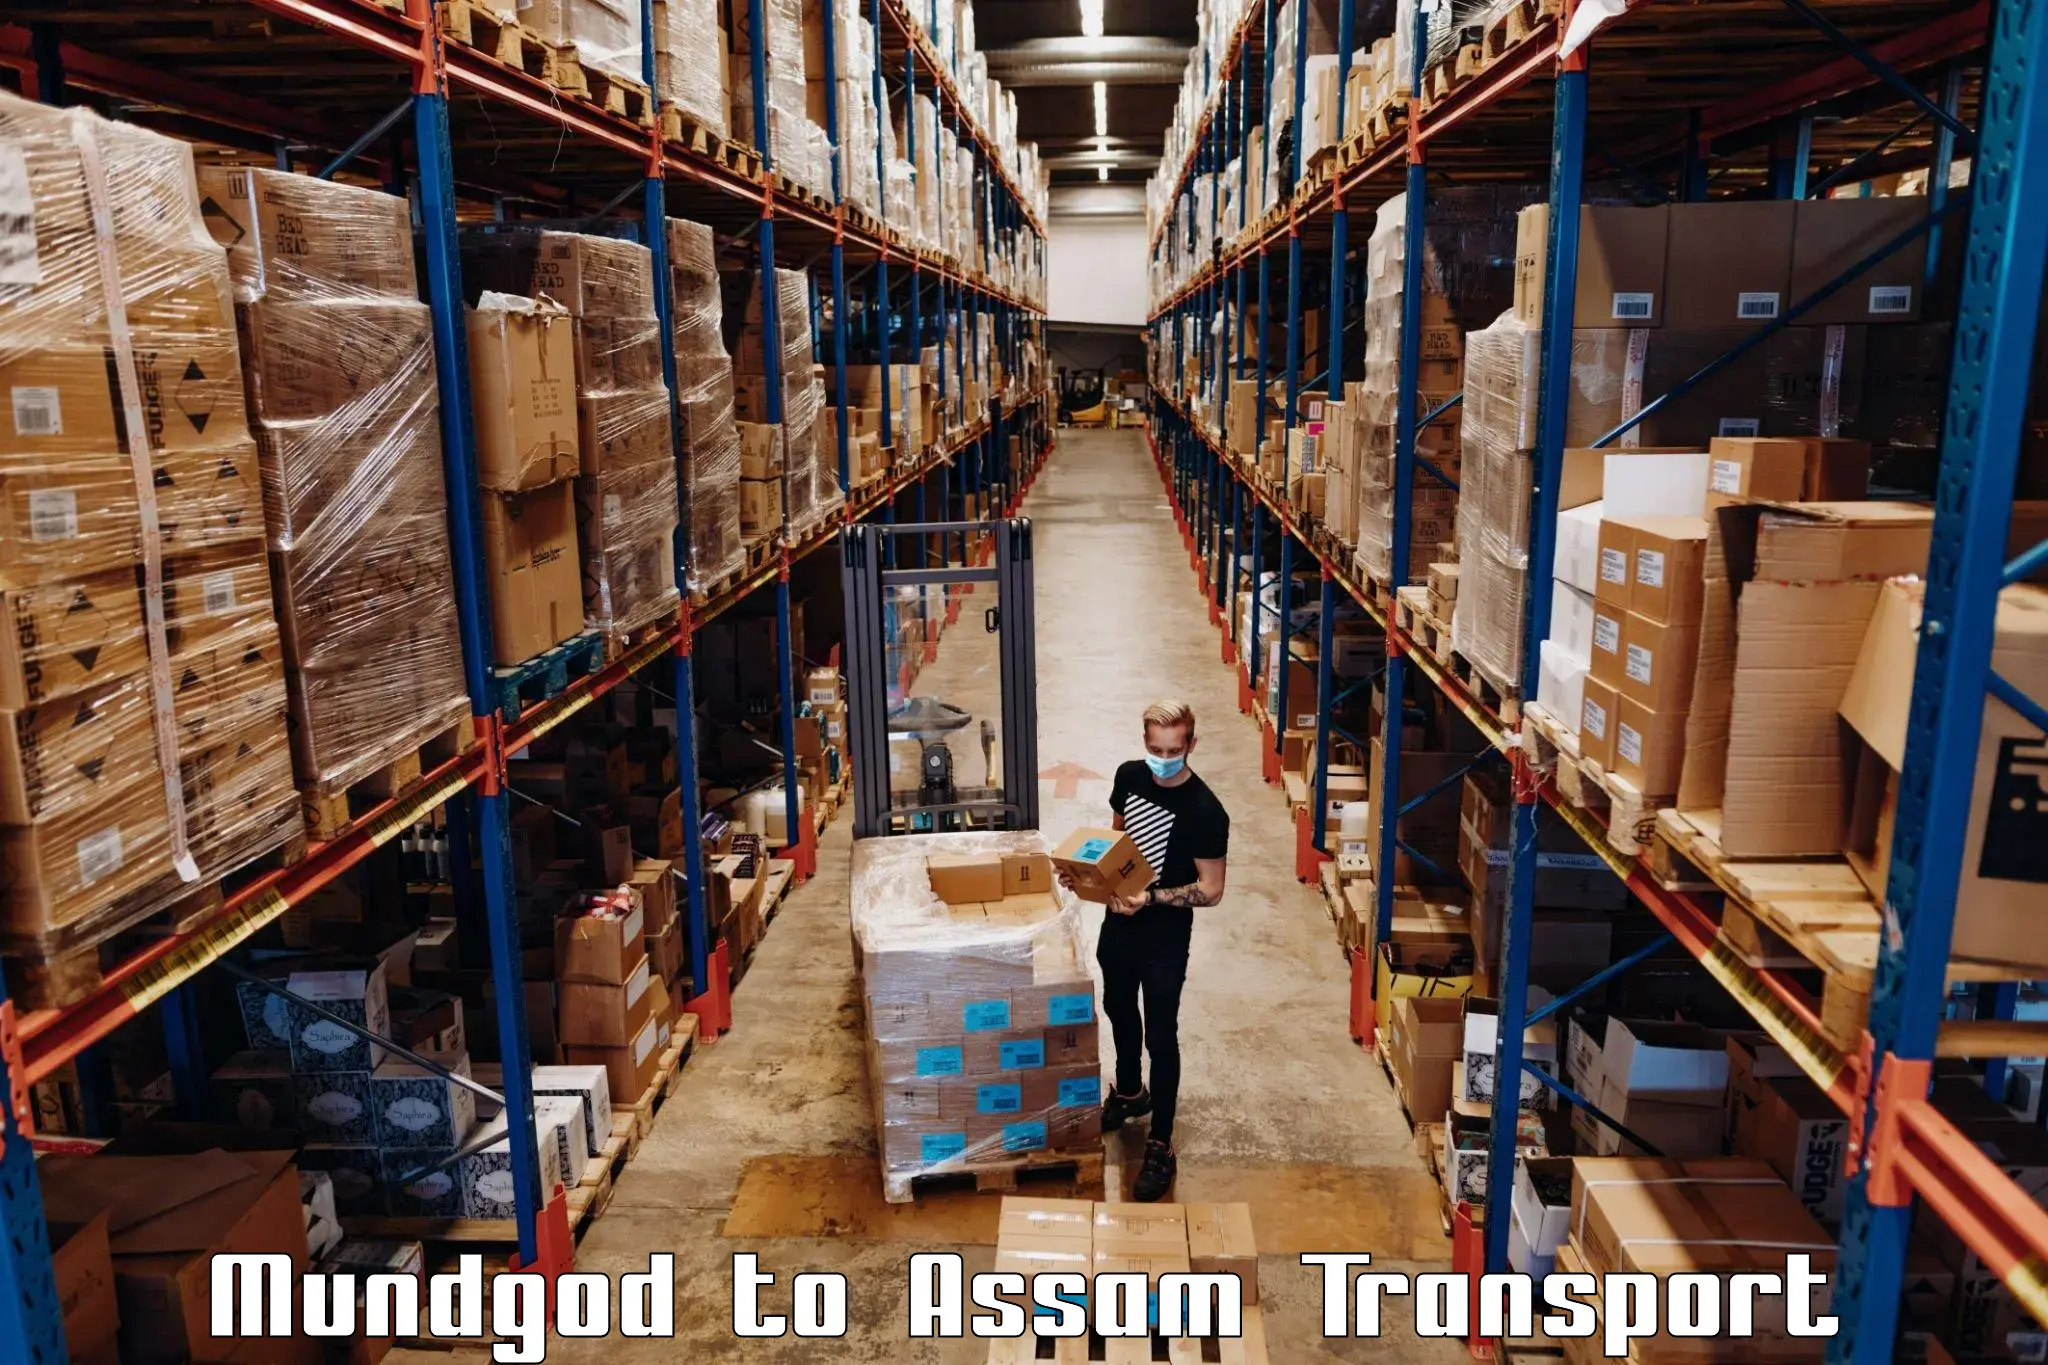 Luggage transport services Mundgod to Goalpara